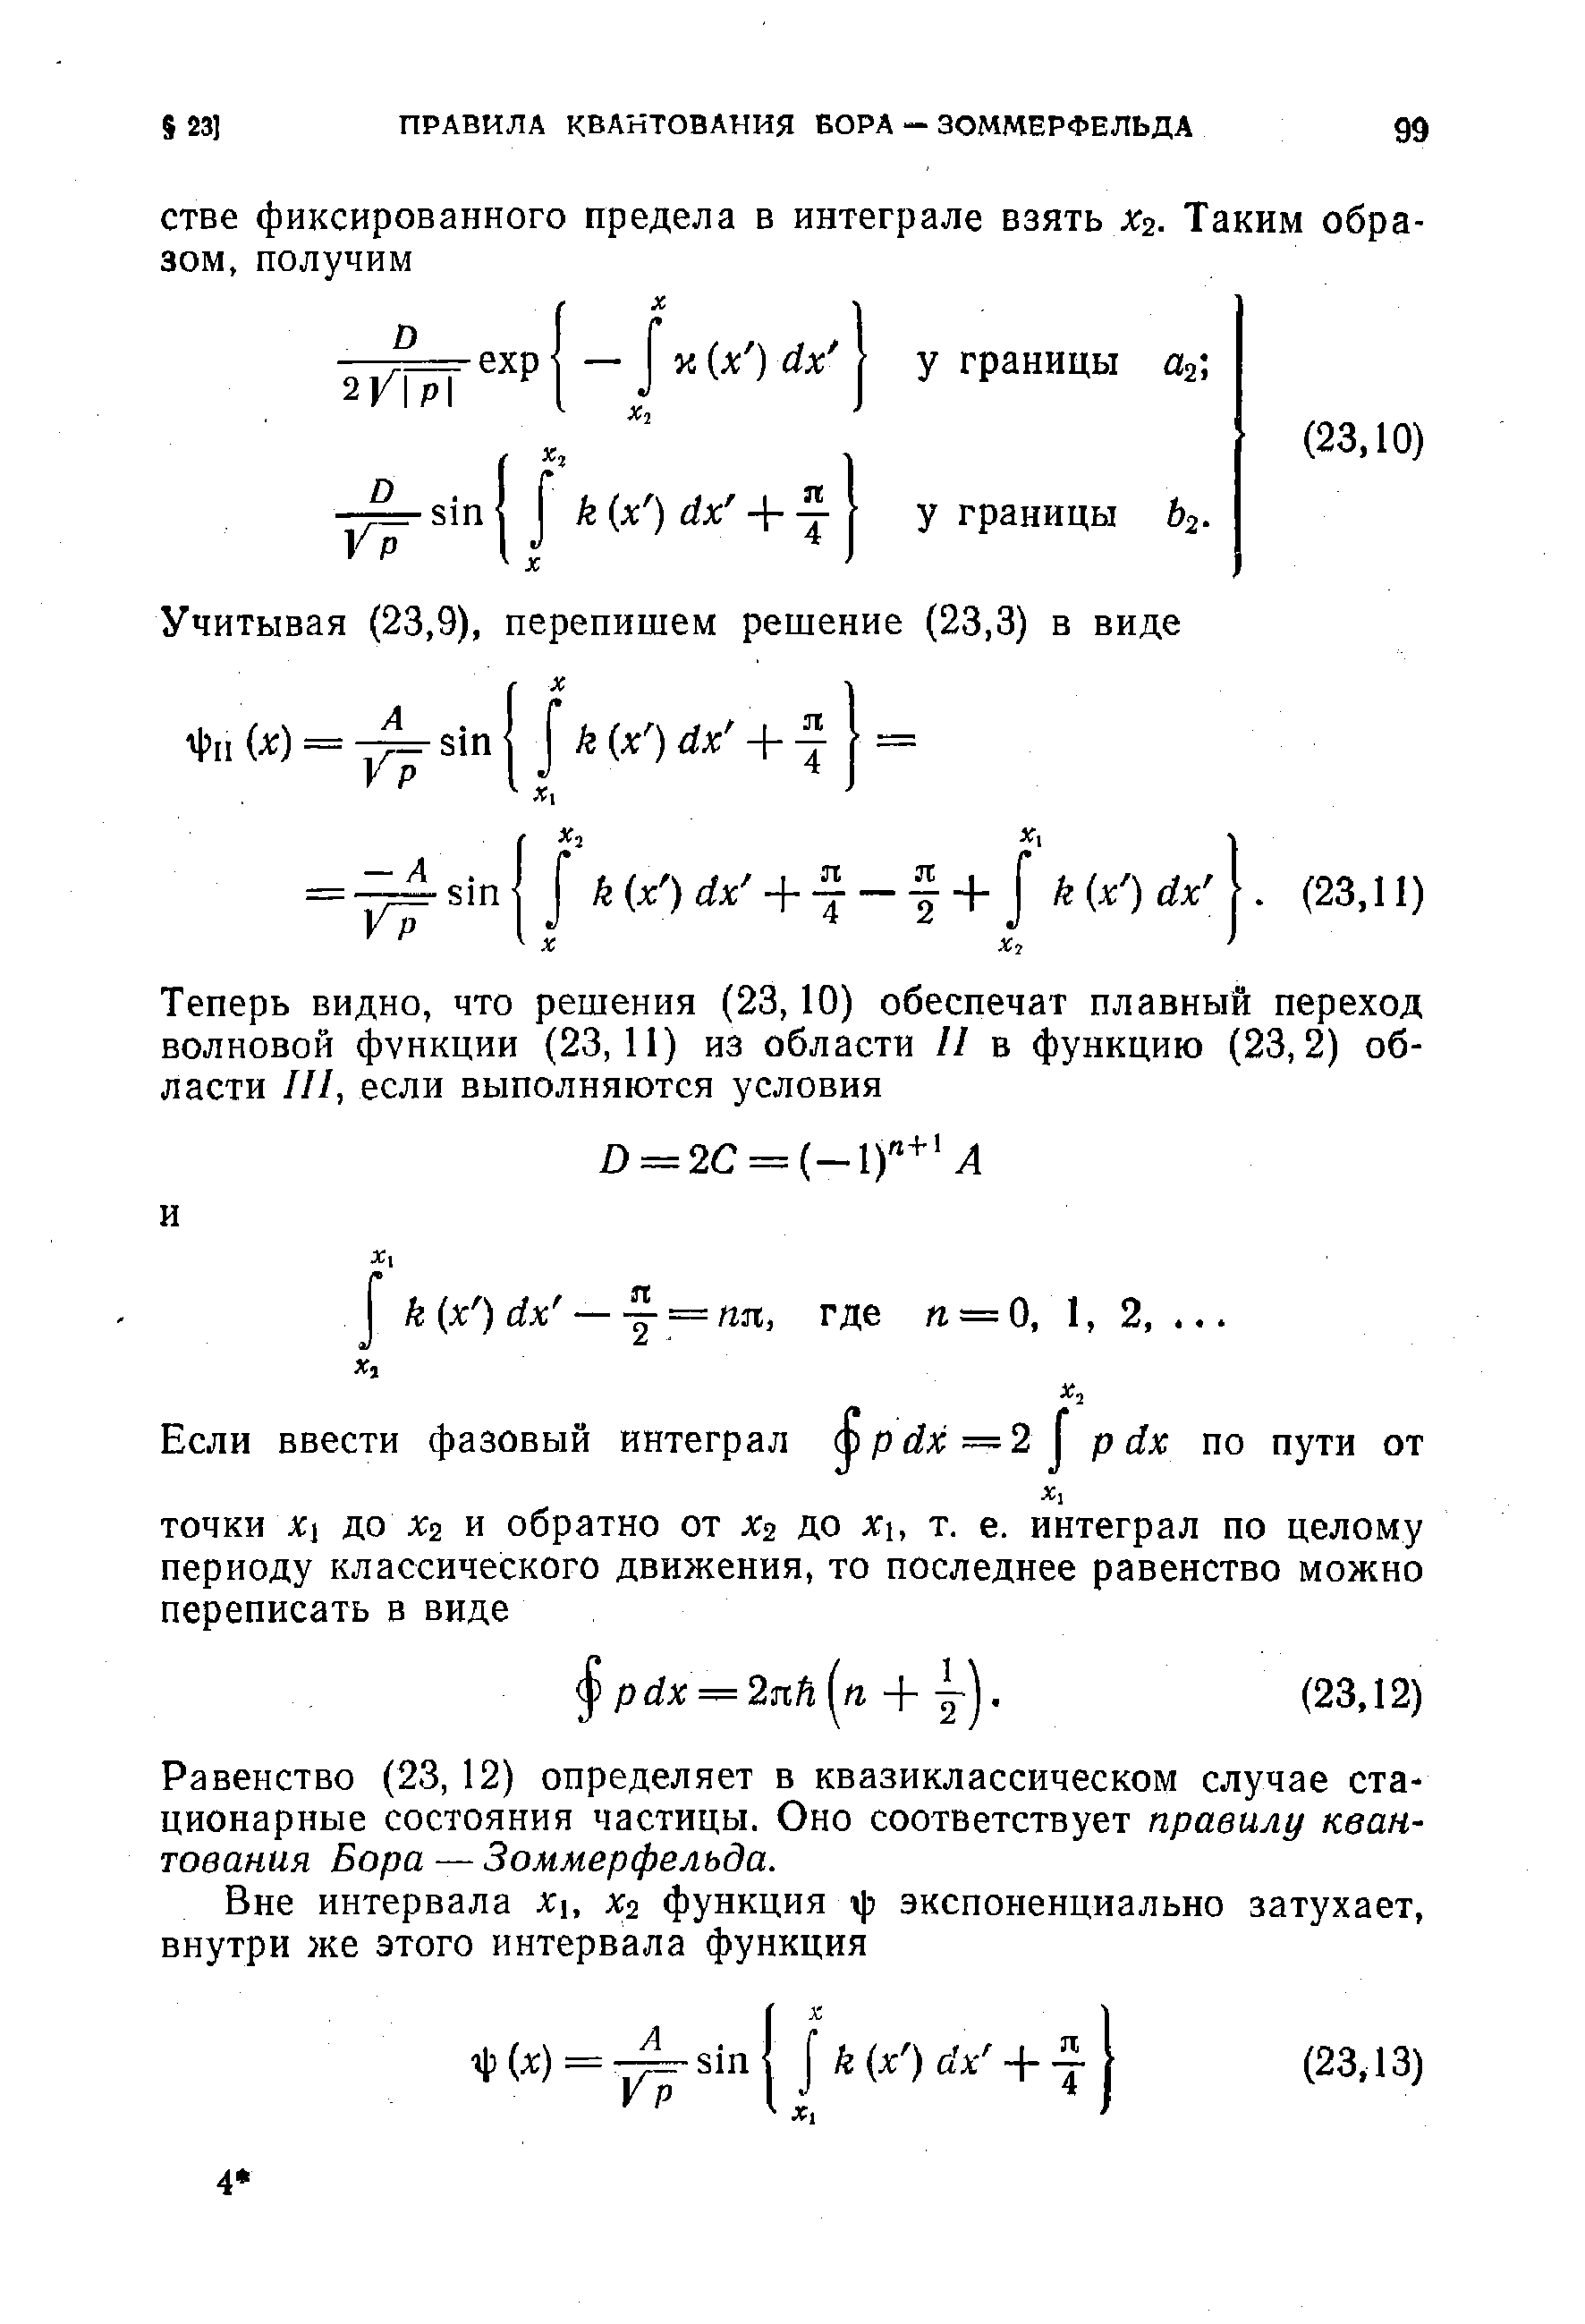 Равенство (23, 12) определяет в квазиклассическом случае стационарные состояния частицы. Оно соответствует правилу квантования Бора — Зоммерфельда.